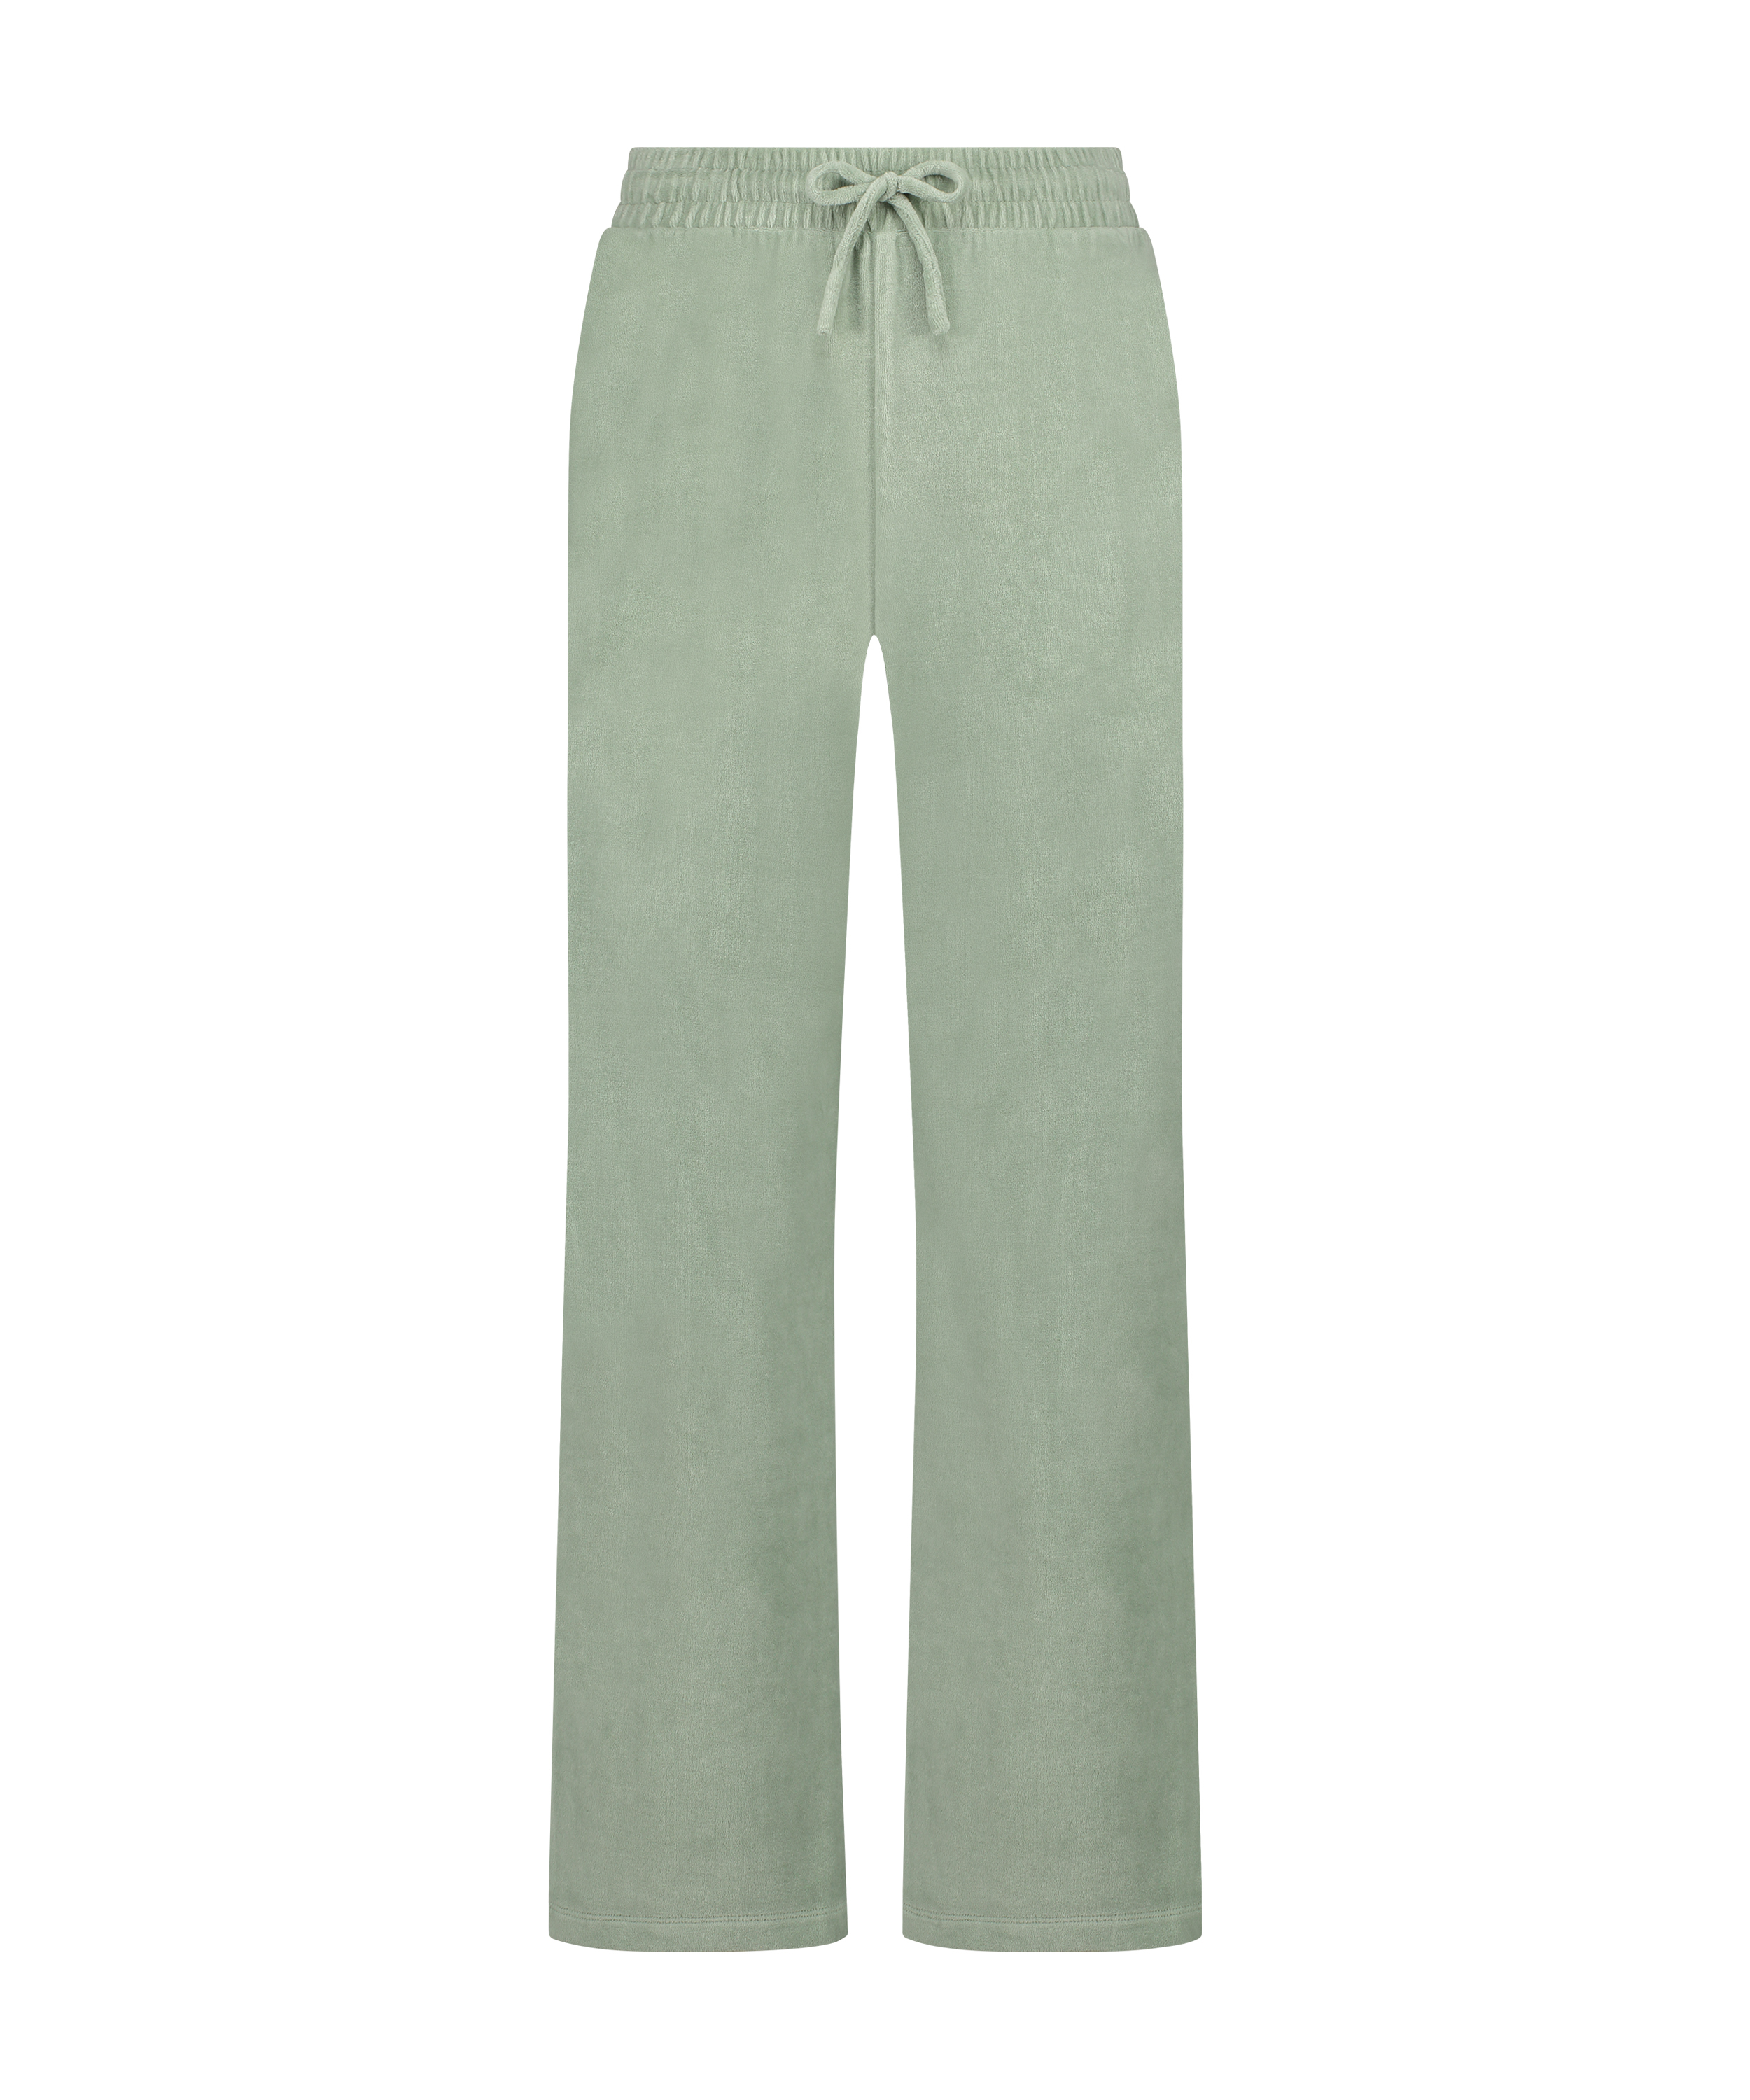 Pyjamasbukser i velour, grøn, main